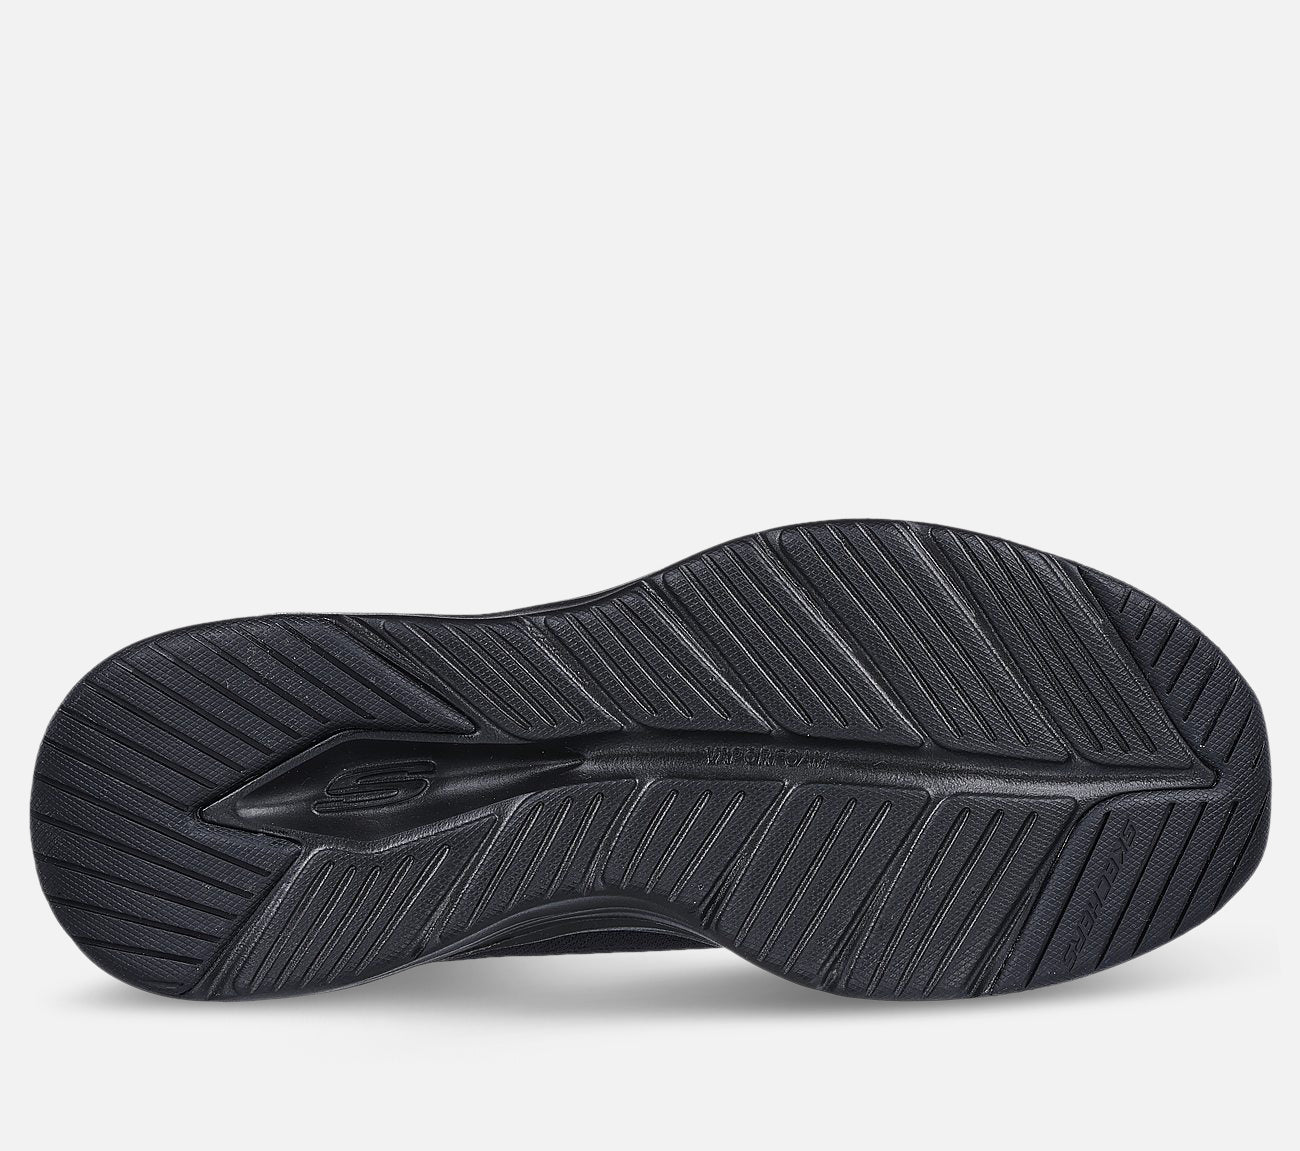 Vapor Foam - Fresh Trend Shoe Skechers